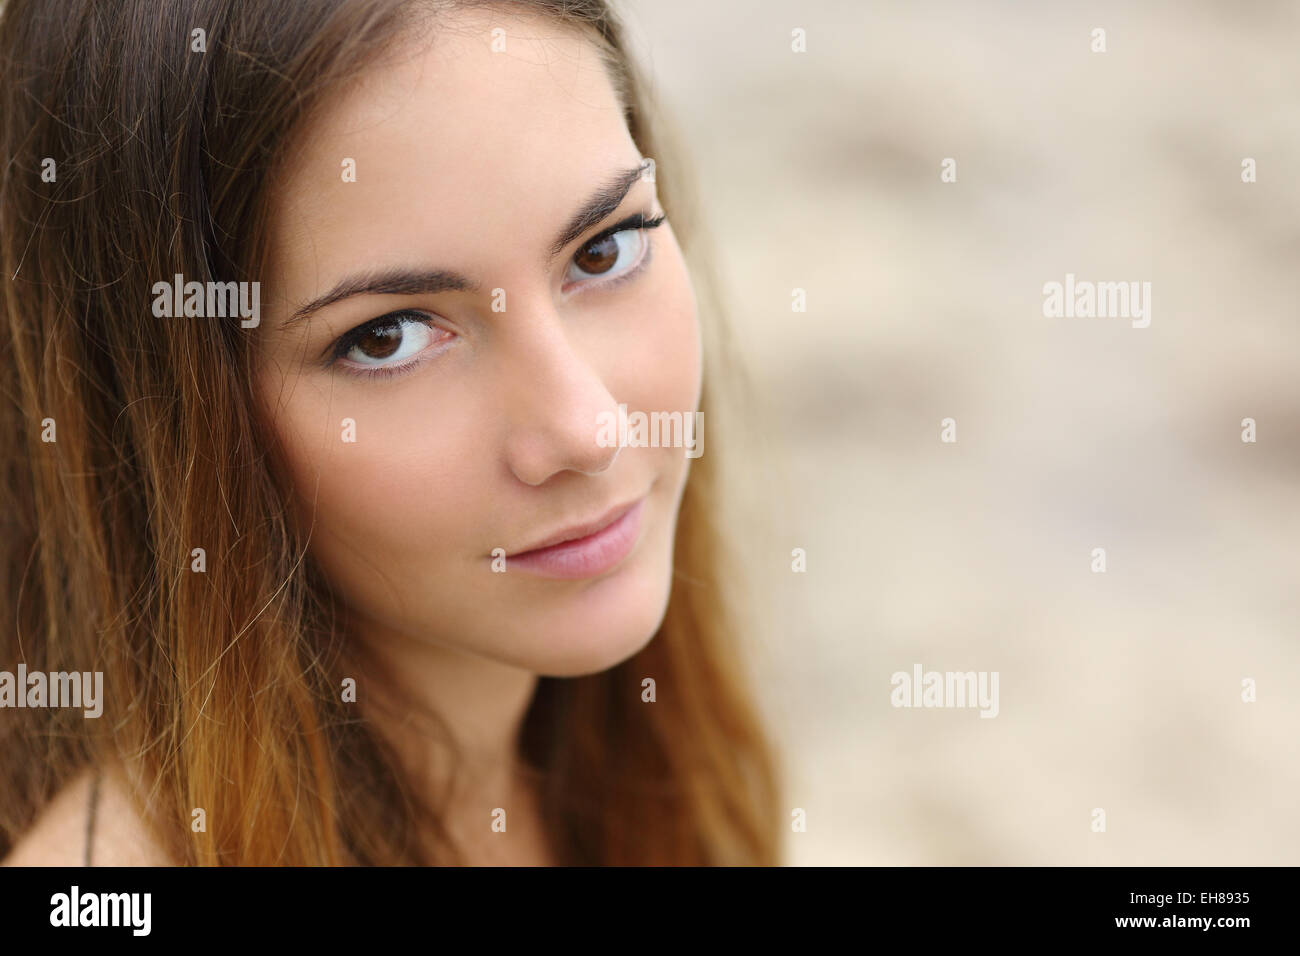 Porträt einer schönen Frau mit grossen Augen und glatte Haut, Blick in die Kamera Stockfoto